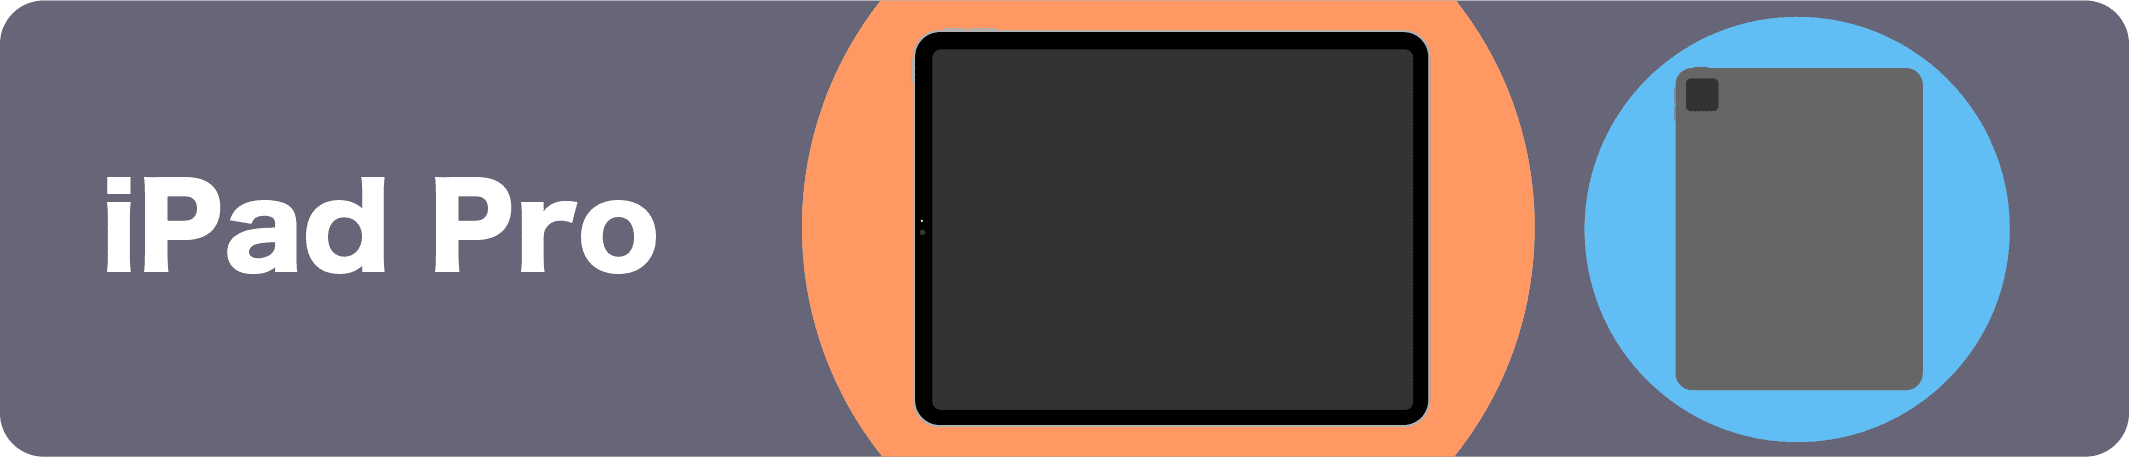 【イラストで見るiPad 2021】iPad mini , iPad Air , iPad Proの違いと新型や価格